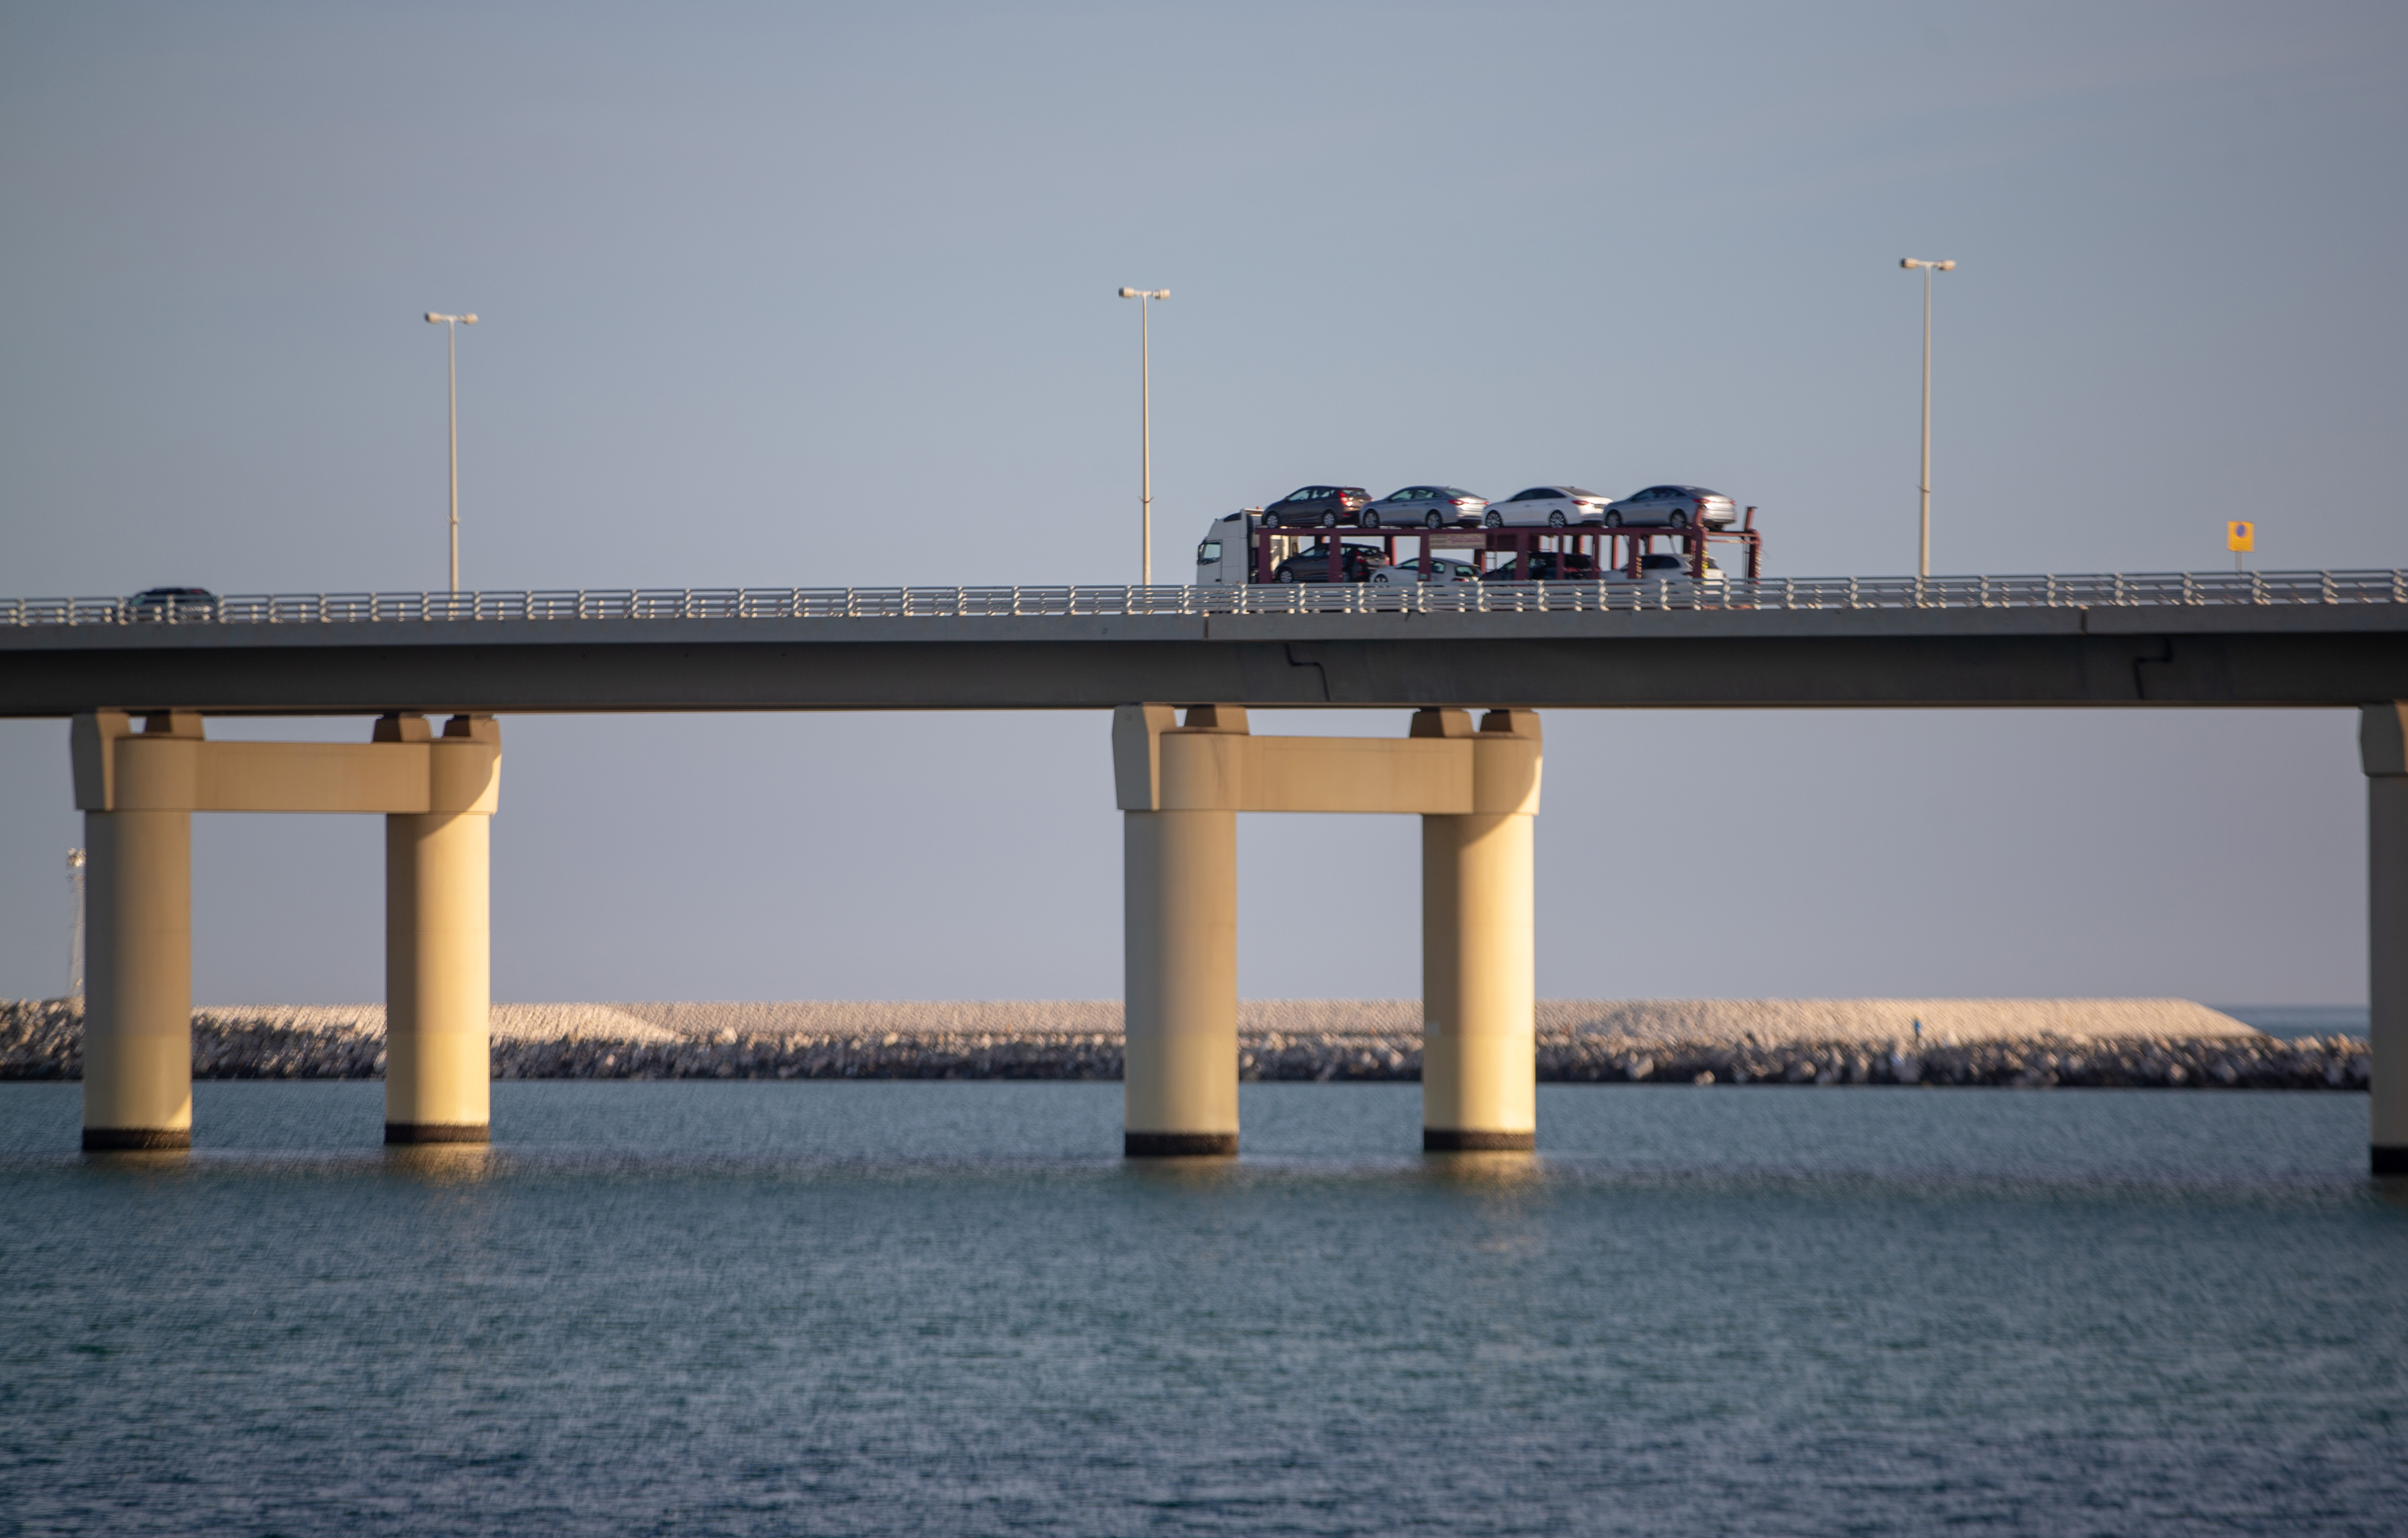 موقع جسر الملك فهد